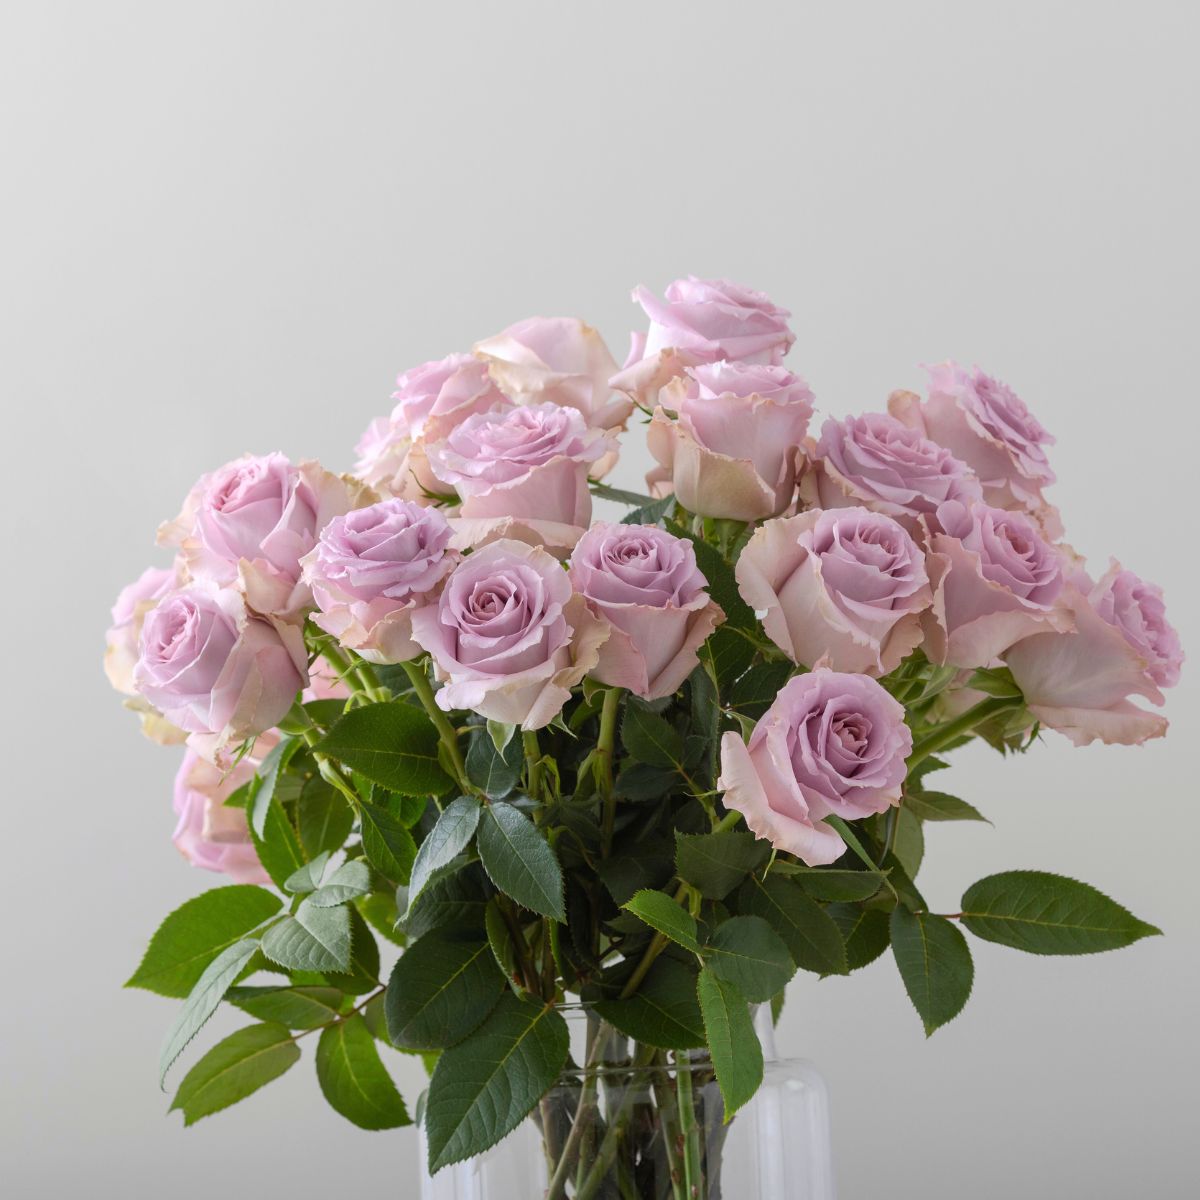 Rosaprima luxury roses